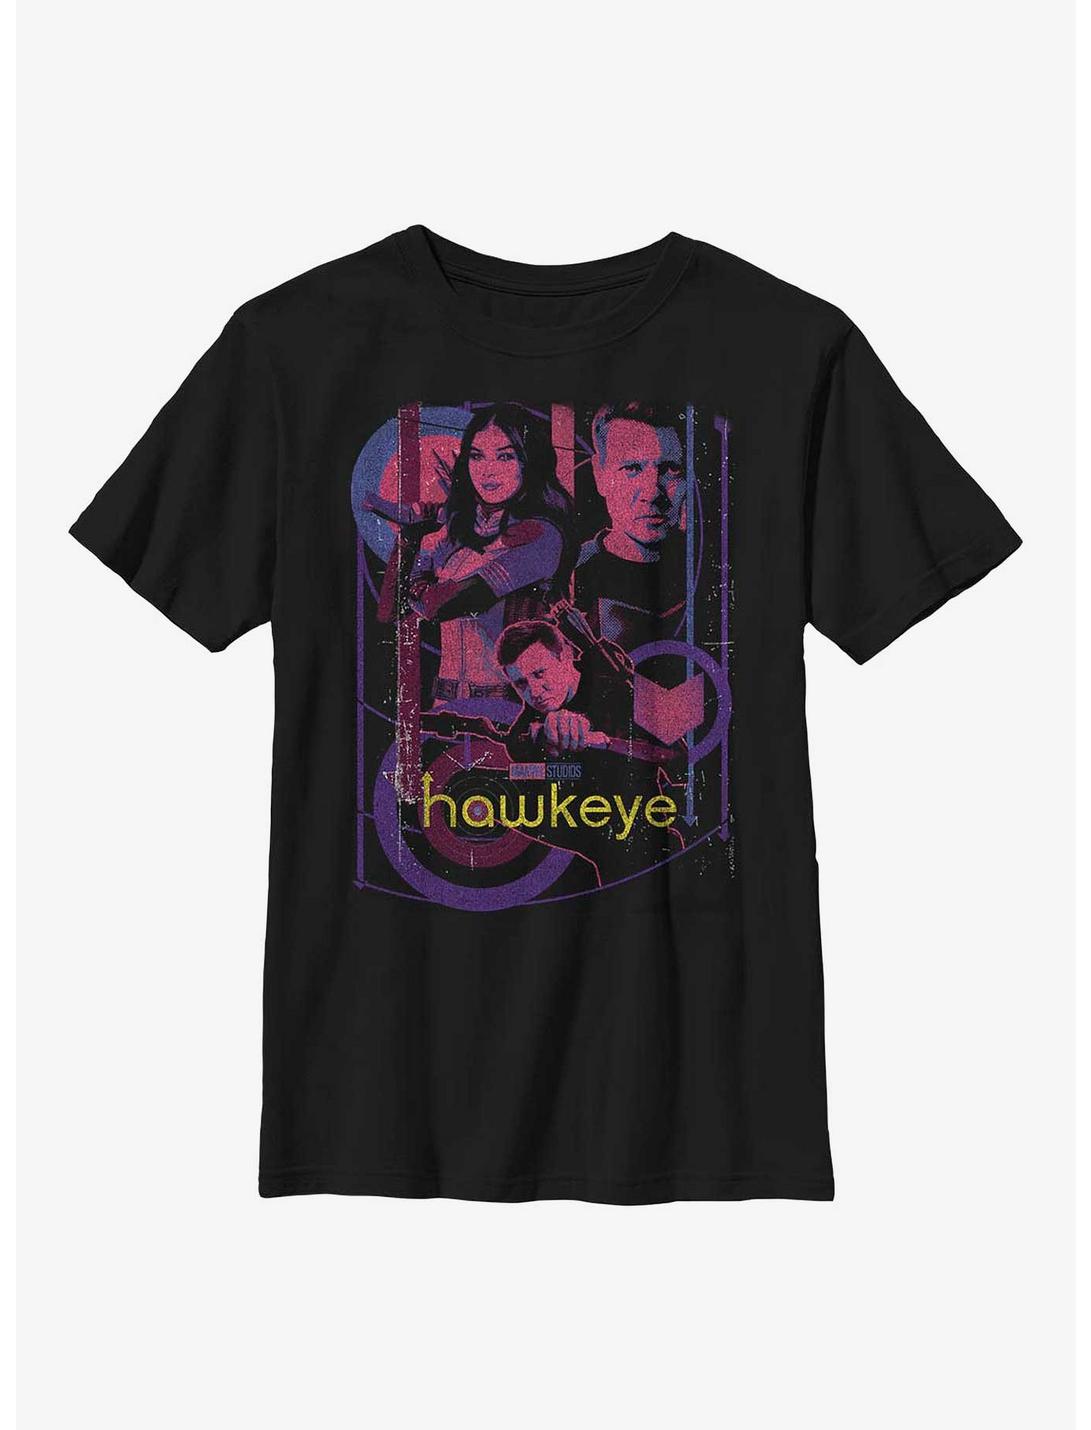 Marvel Hawkeye Bolt Slinger Collage Youth T-Shirt, BLACK, hi-res